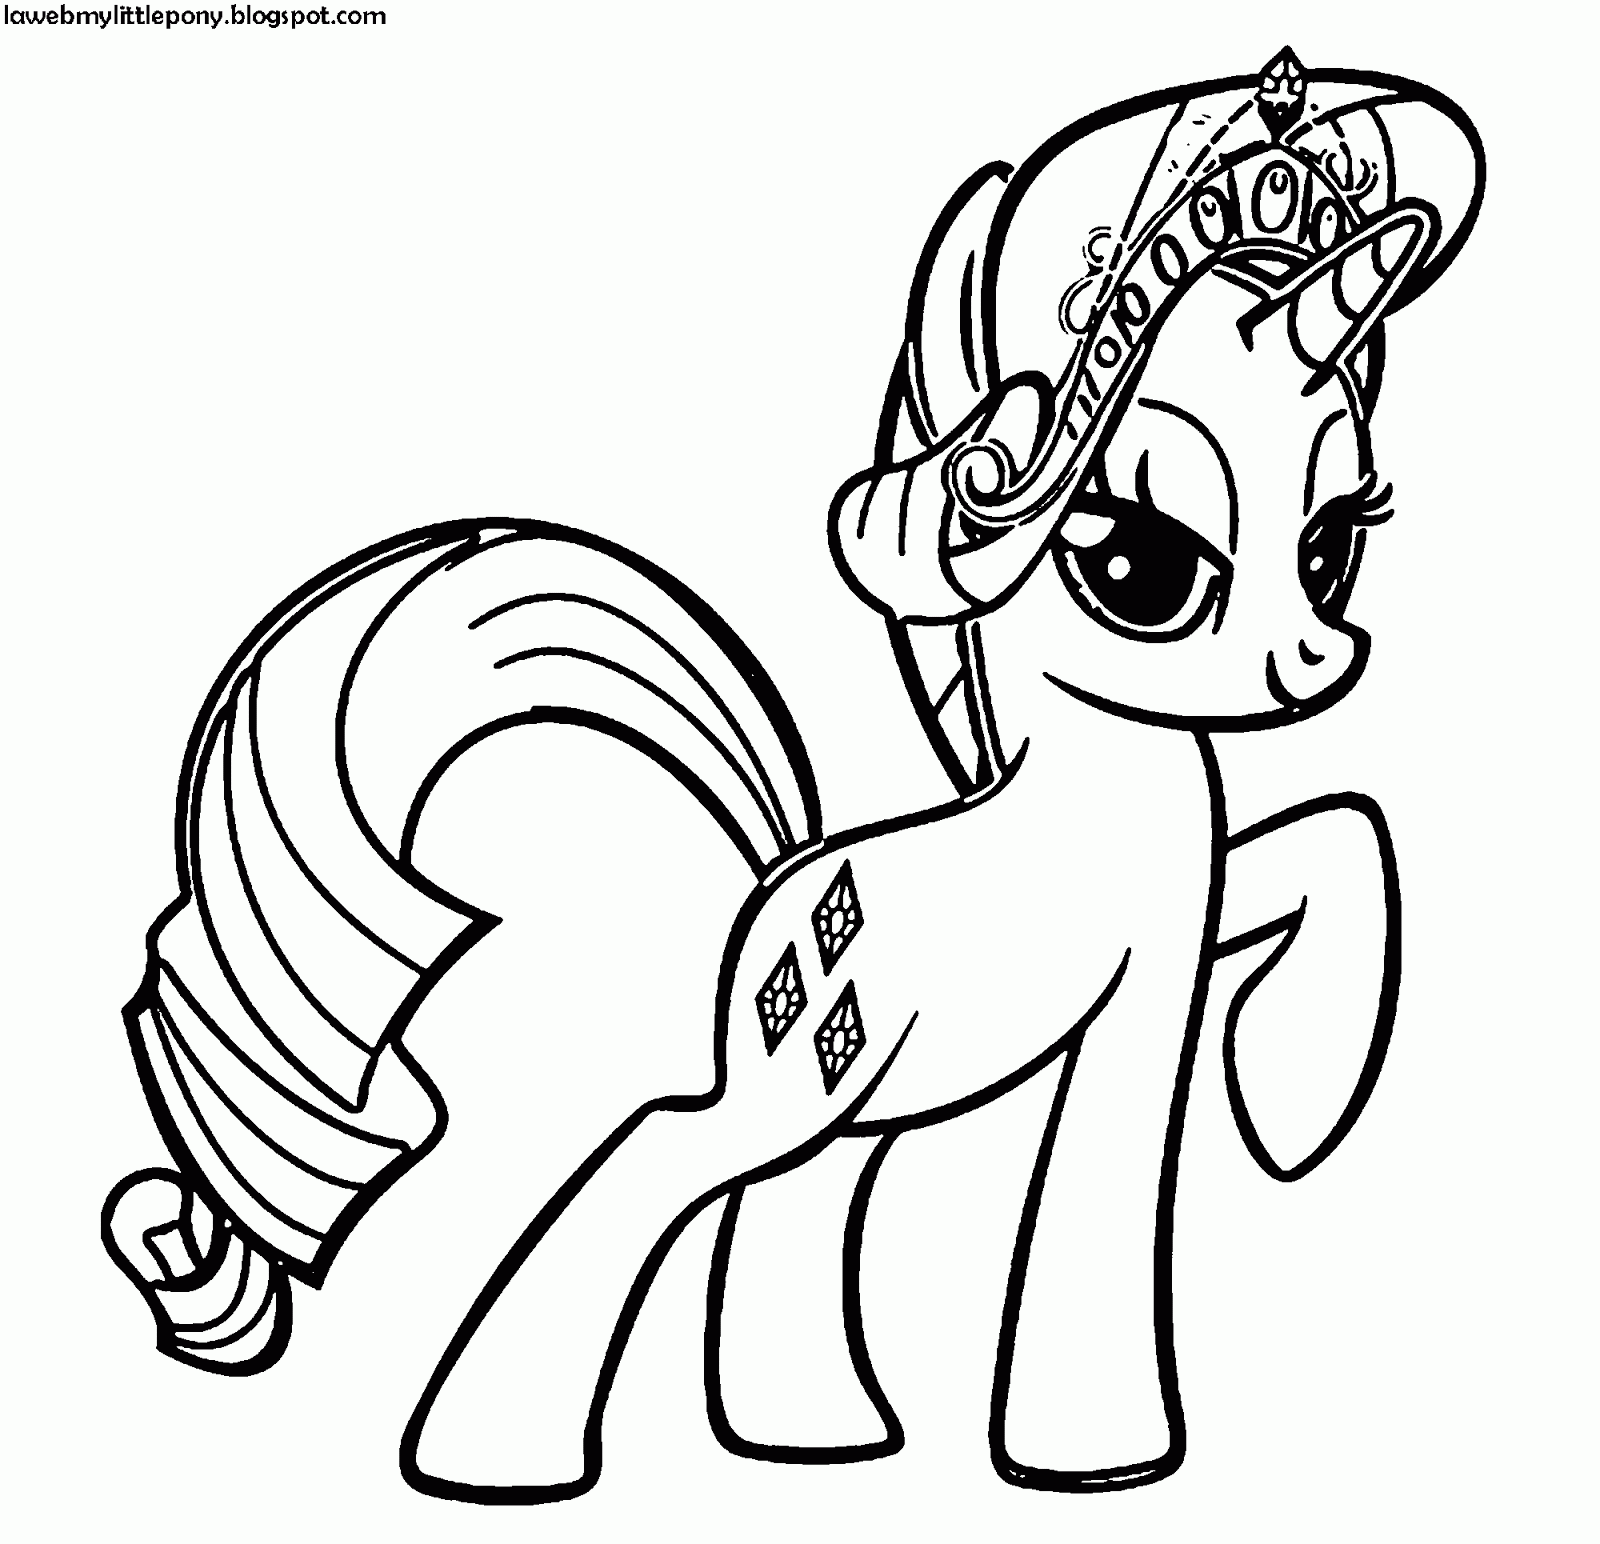 My Little Pony Dibujos Para Colorear De Rarity De My Little Pony